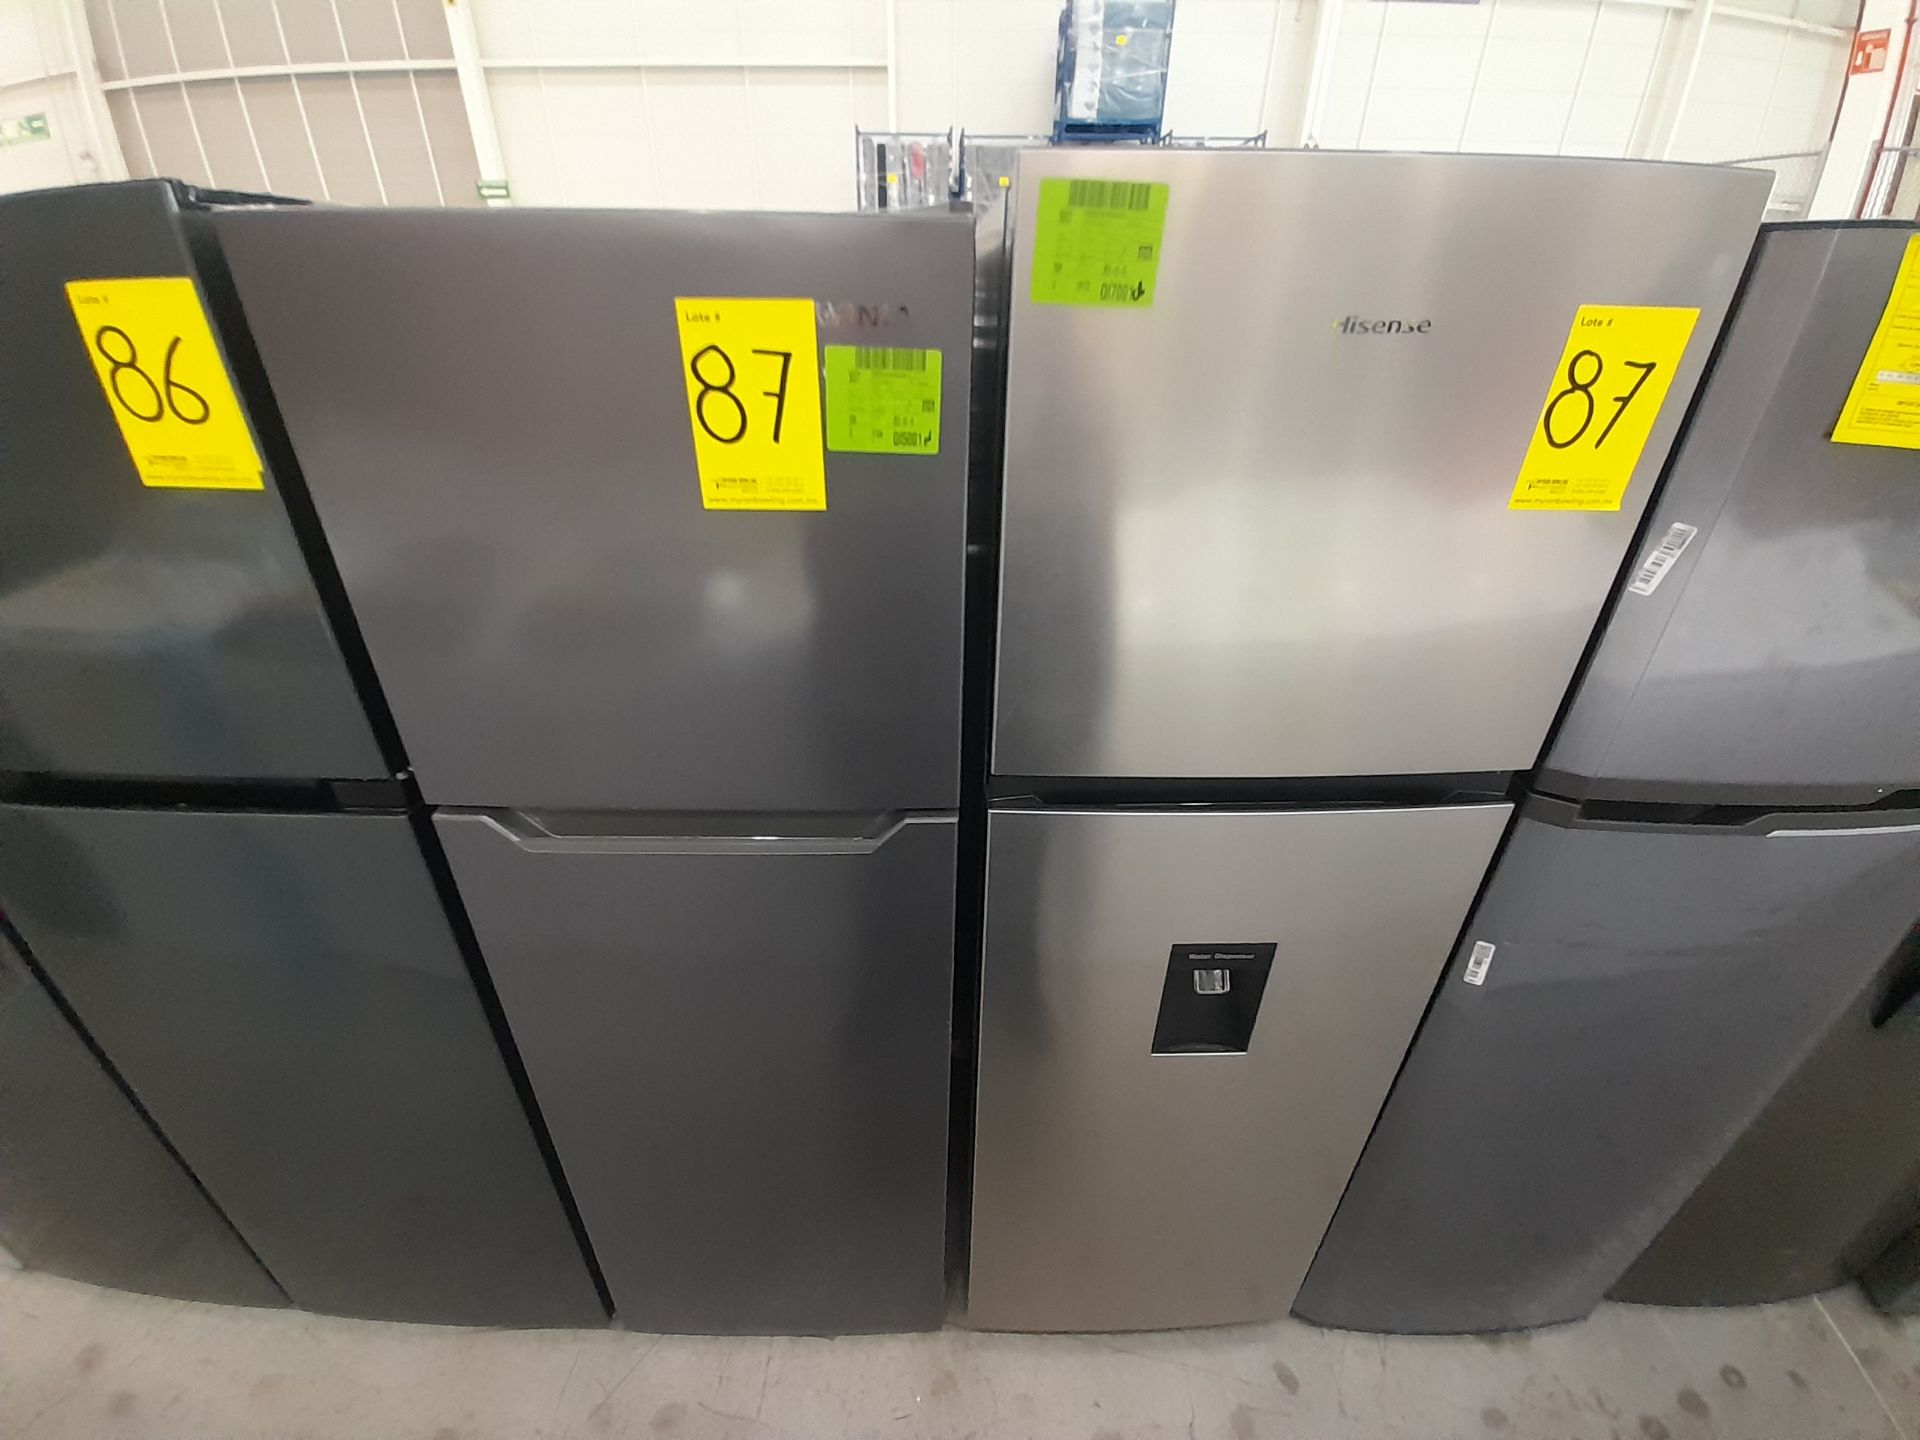 Lote de 2 refrigeradores contiene: 1 Refrigerador Marca WINIA, Modelo WRT9000AMMX, Color GRIS;